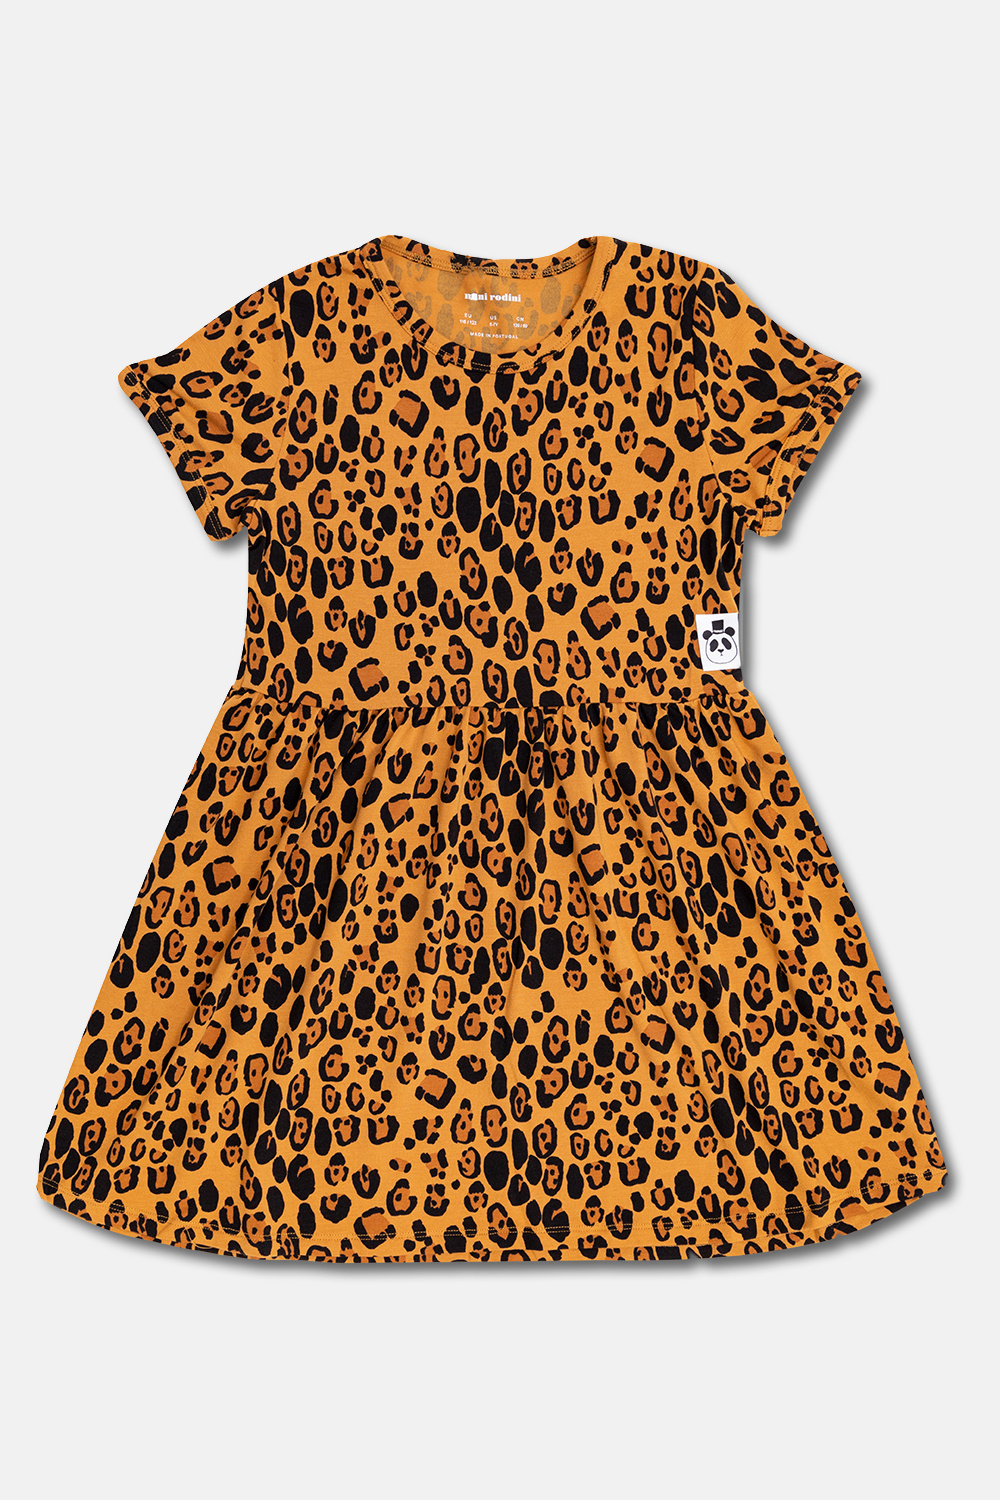 Mini Rodini Leopard-print Dress dress